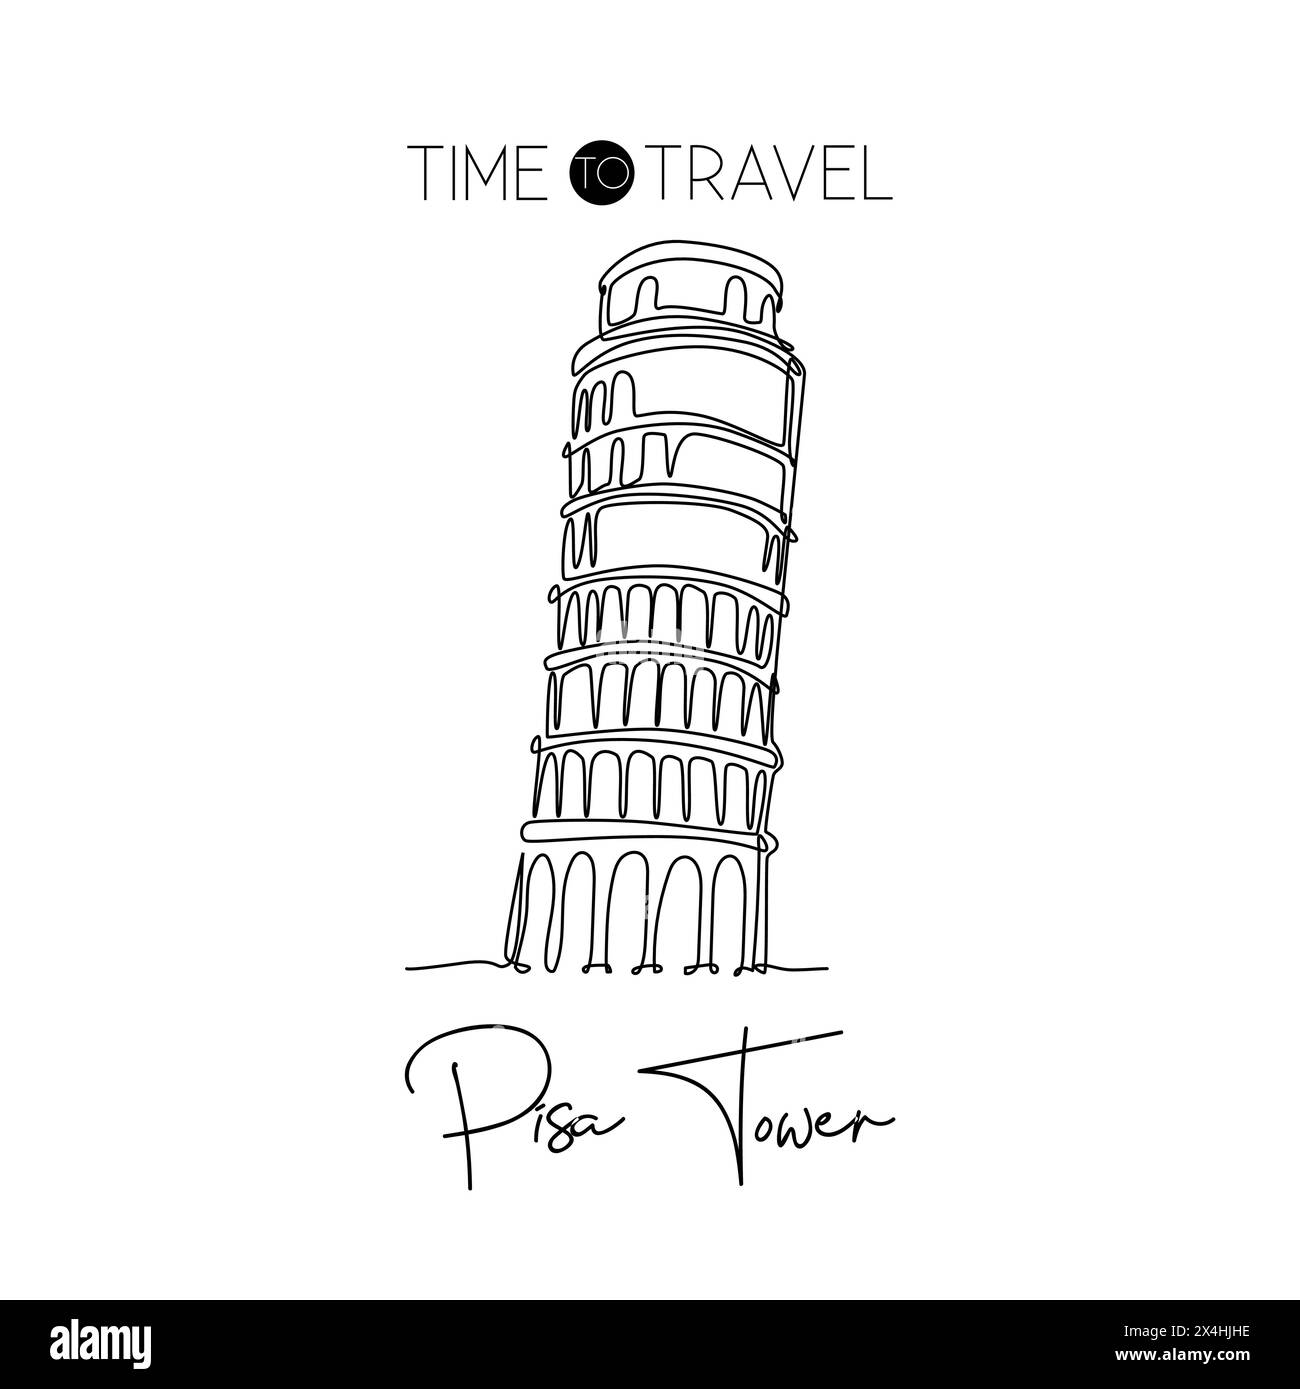 Eine durchgehende Linienzeichnung des Wahrzeichens des Pisa-Turms. Wunderschöner historischer, ikonischer Ort auf der Piazza del Duomo. Wohnwand mit Postermotiv. Moderne Si Stock Vektor